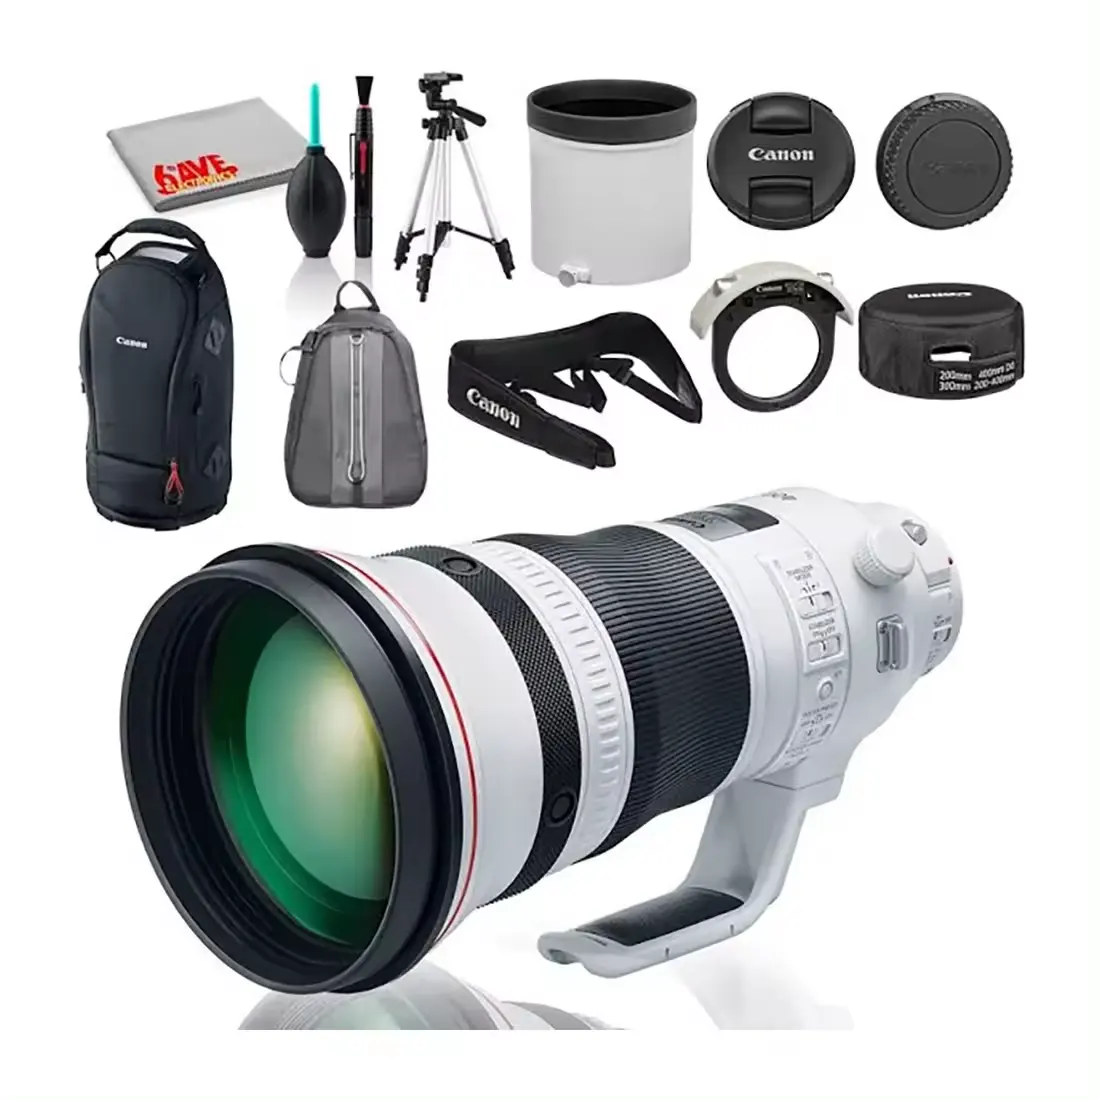 "Venta caliente NUEVO EF 400mm f/2.8L IS III USM Lens Bundle con kit de limpieza-¡Listo para enviar!"